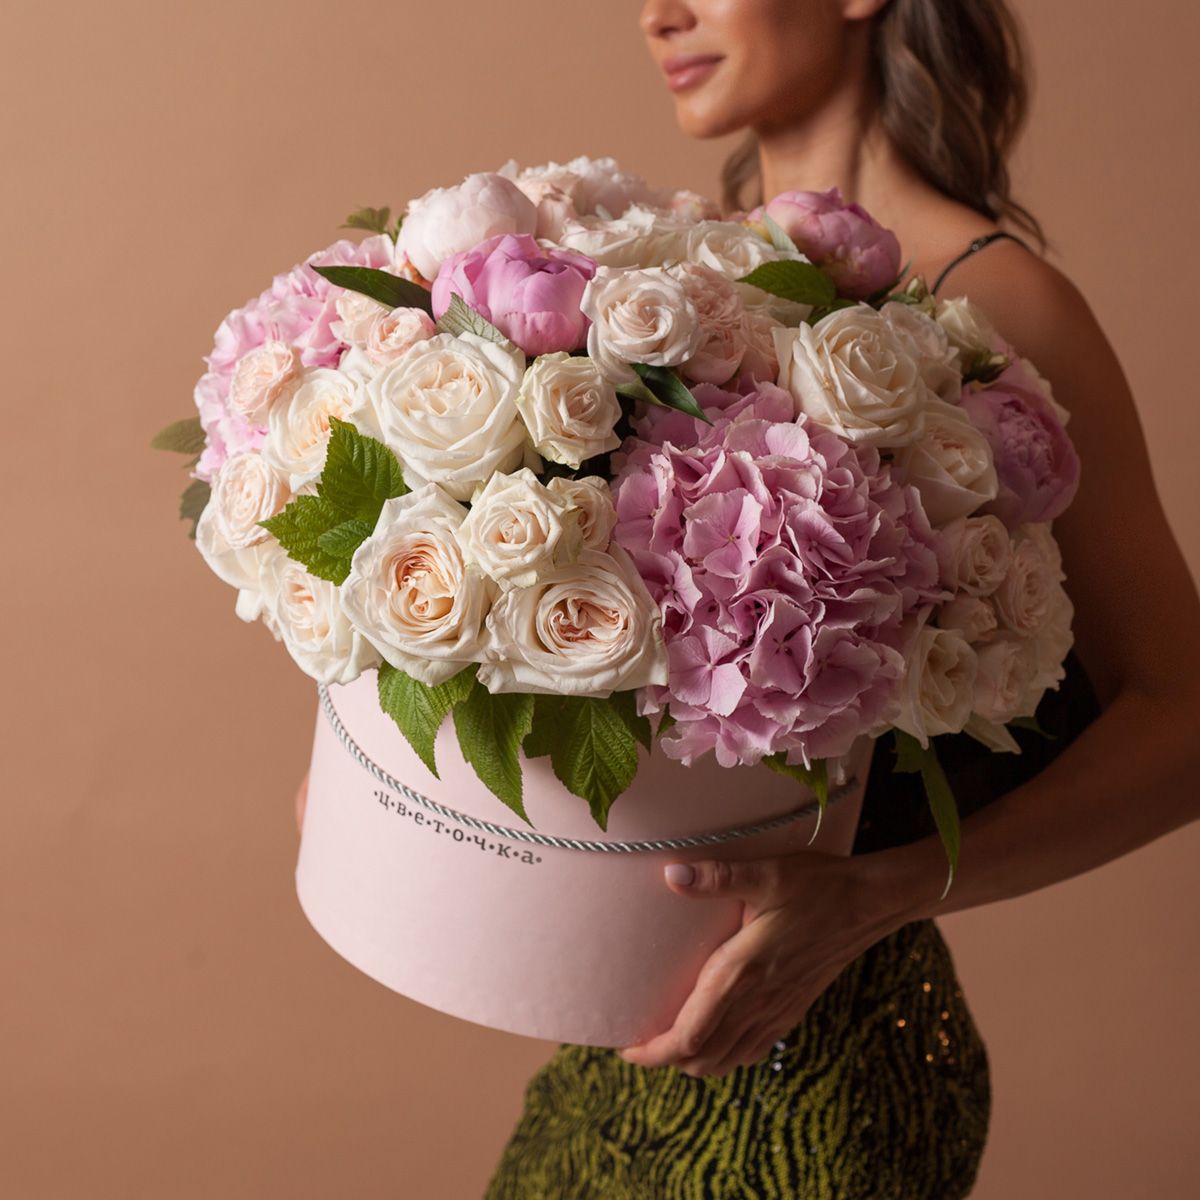 Цветочная композиция из гортензии, пионов, роз в шляпой коробке №1157